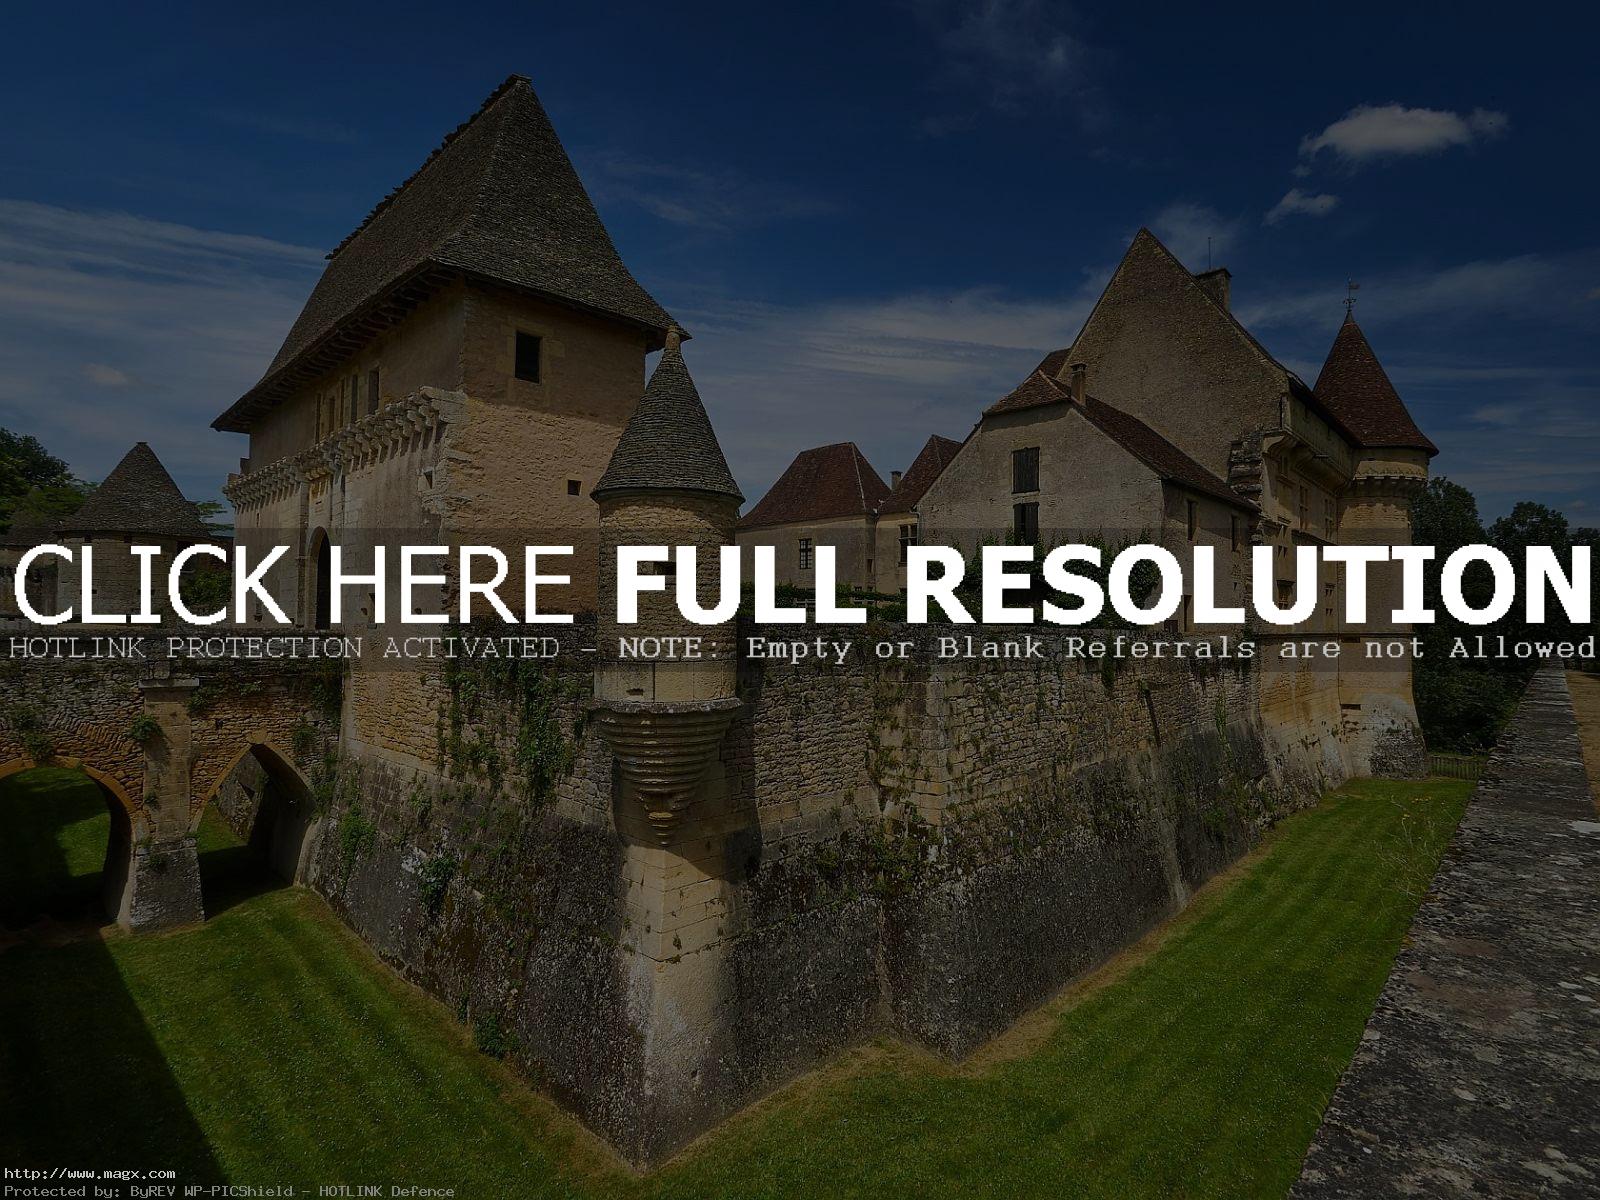 chateau de losse Le Chateau de Losse, France